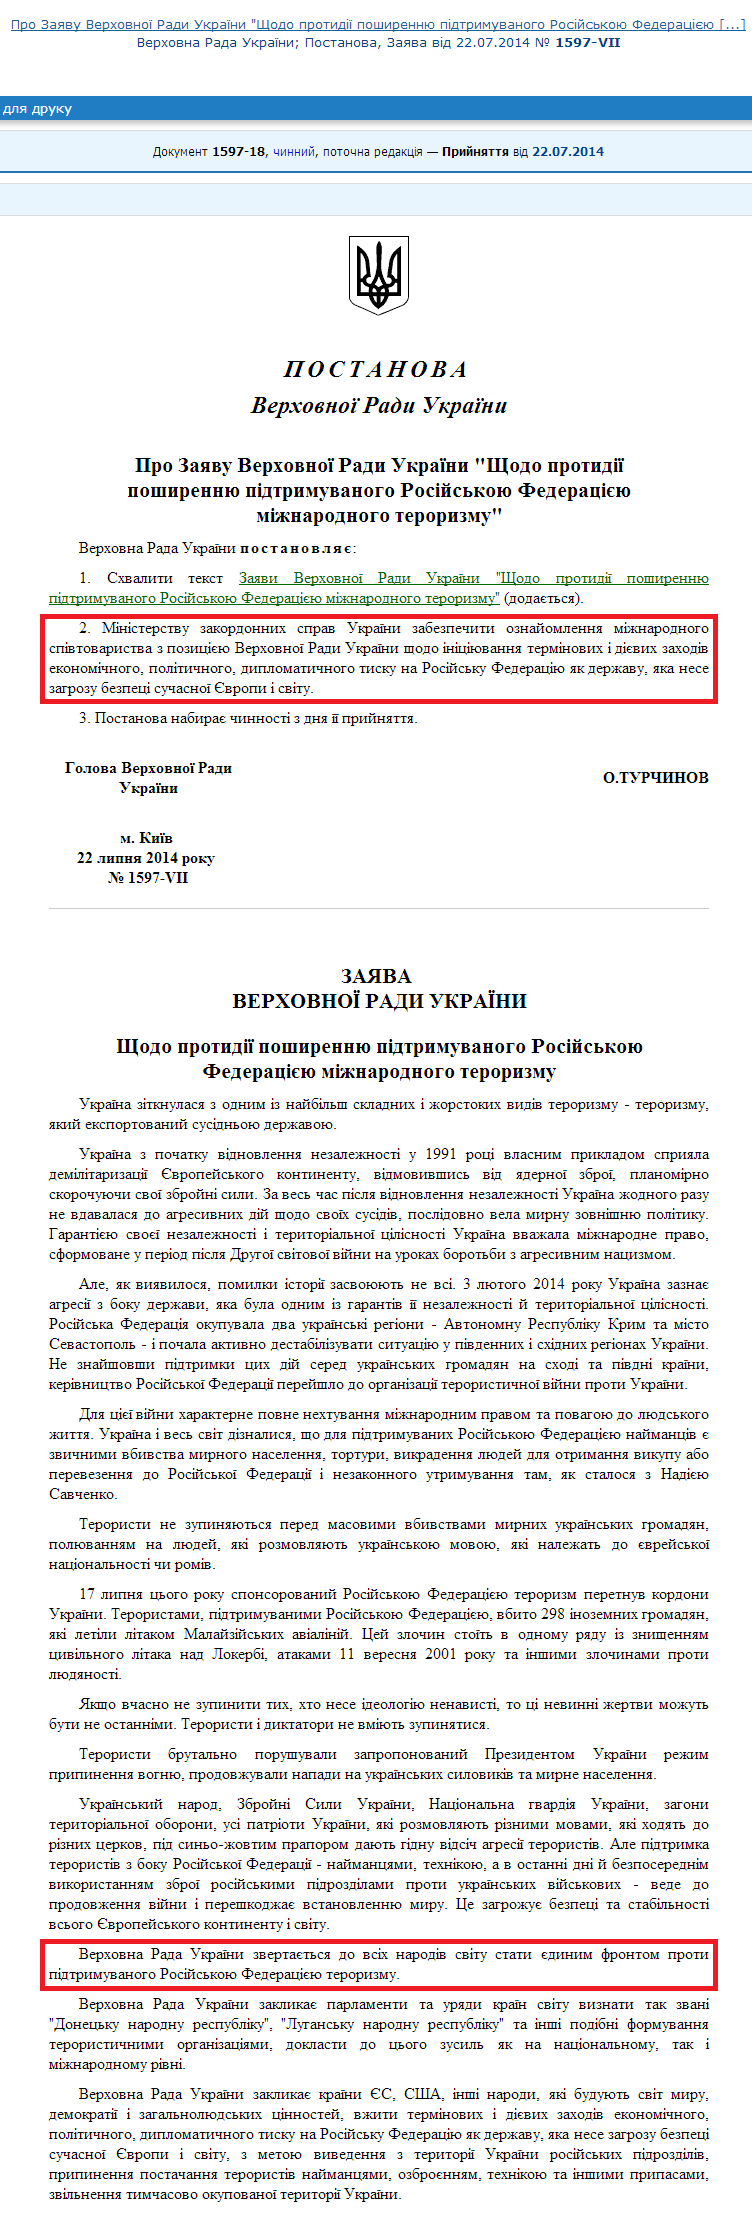 http://zakon4.rada.gov.ua/laws/show/1597-vii